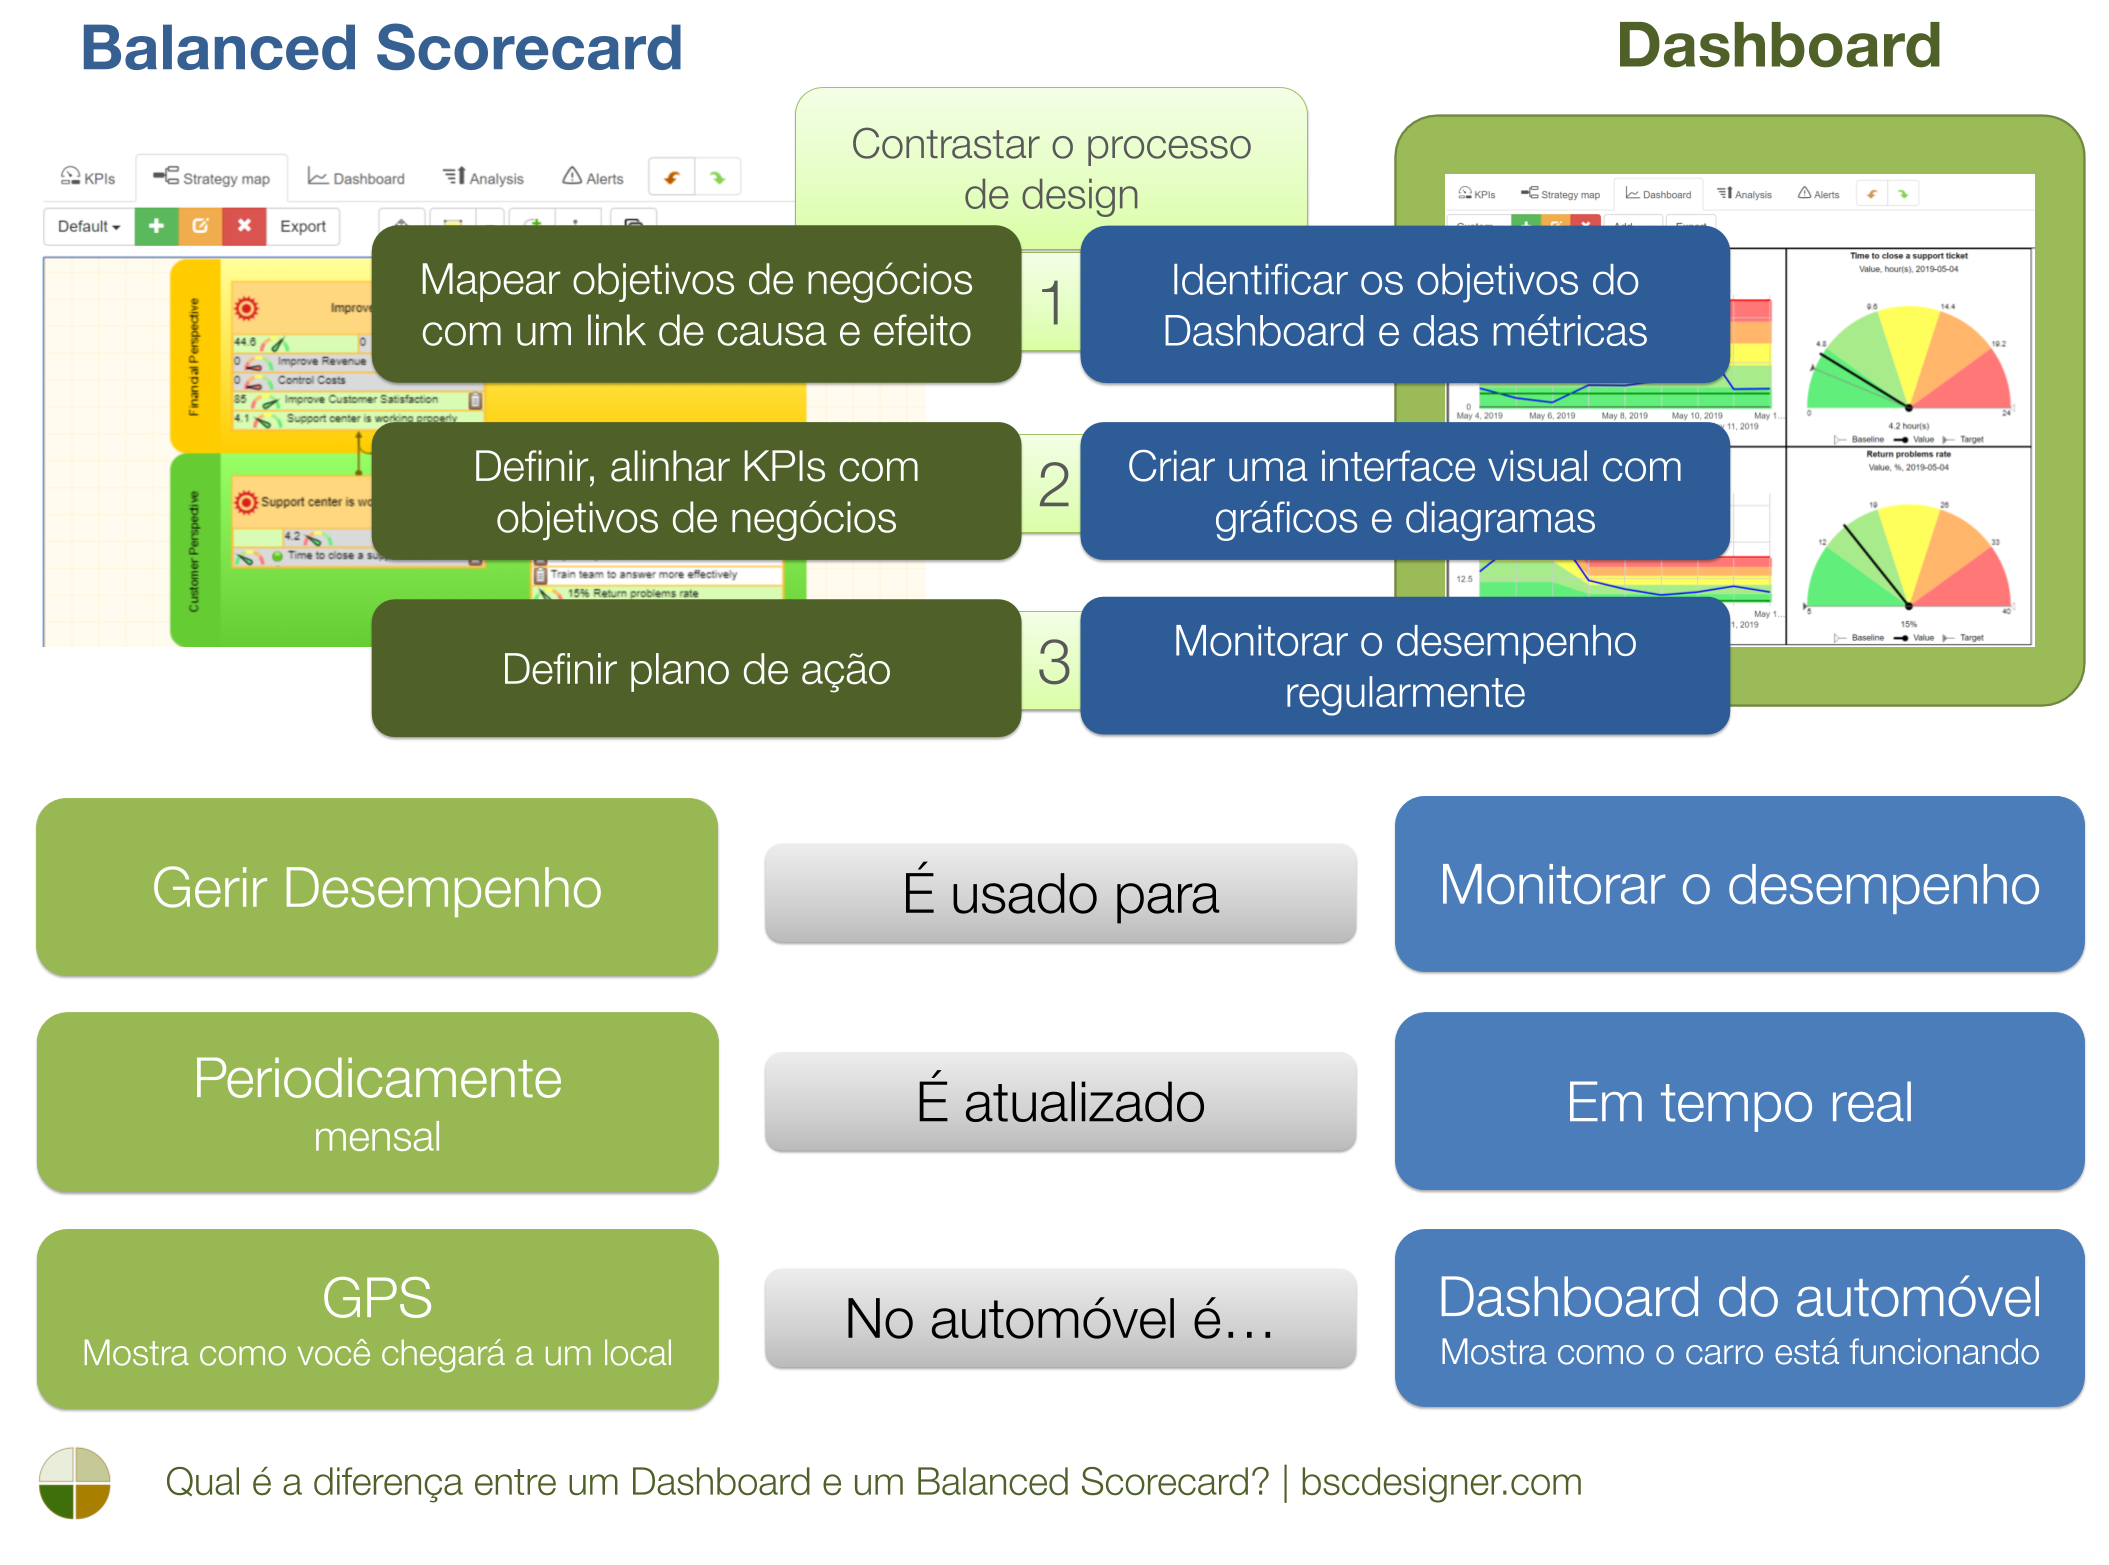 Qual é a diferença entre um Dashboard e um balanced scorecard?